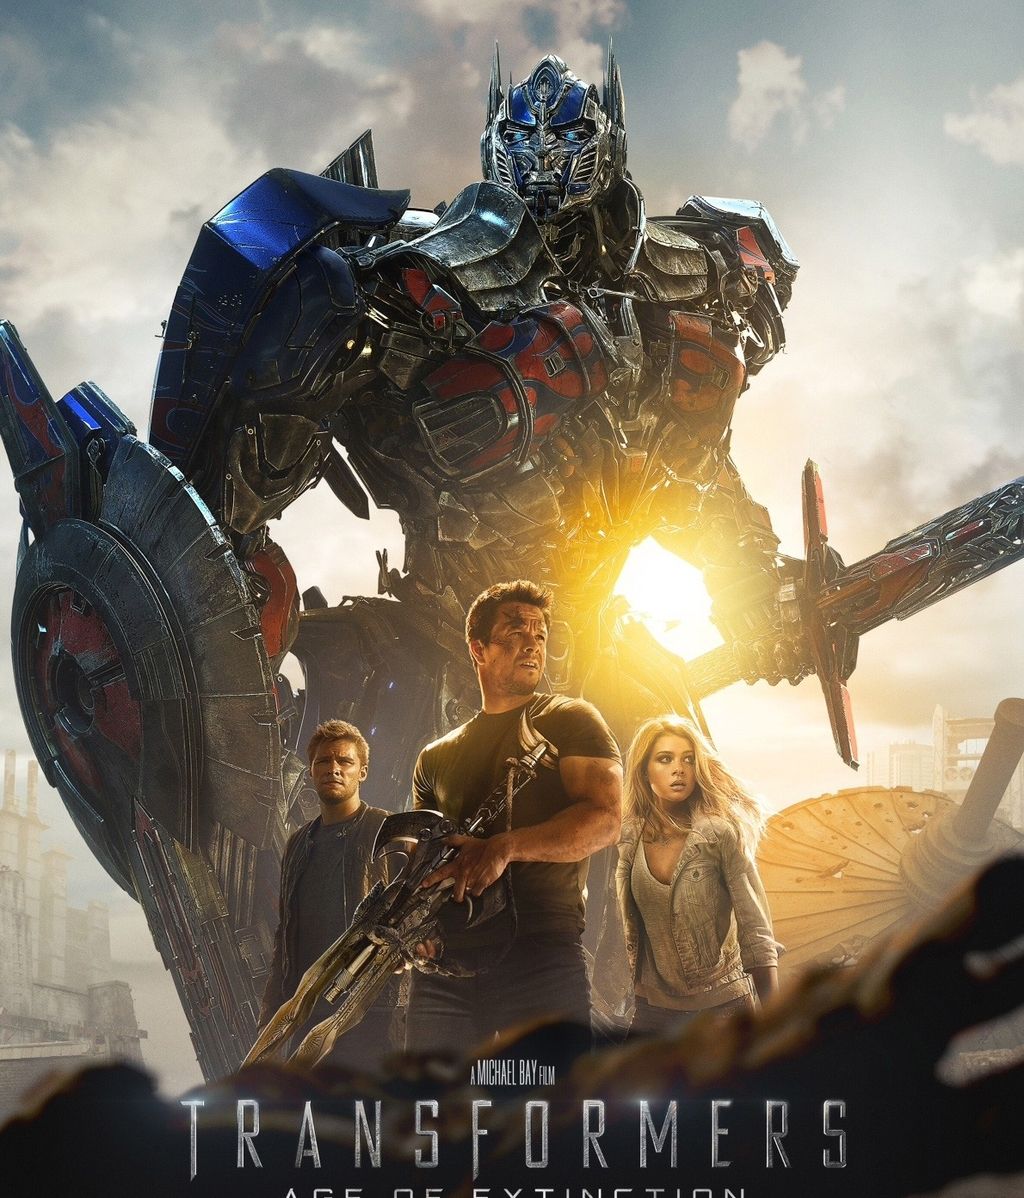 Transformers: La era de la extinción, favorita a la peor película del año